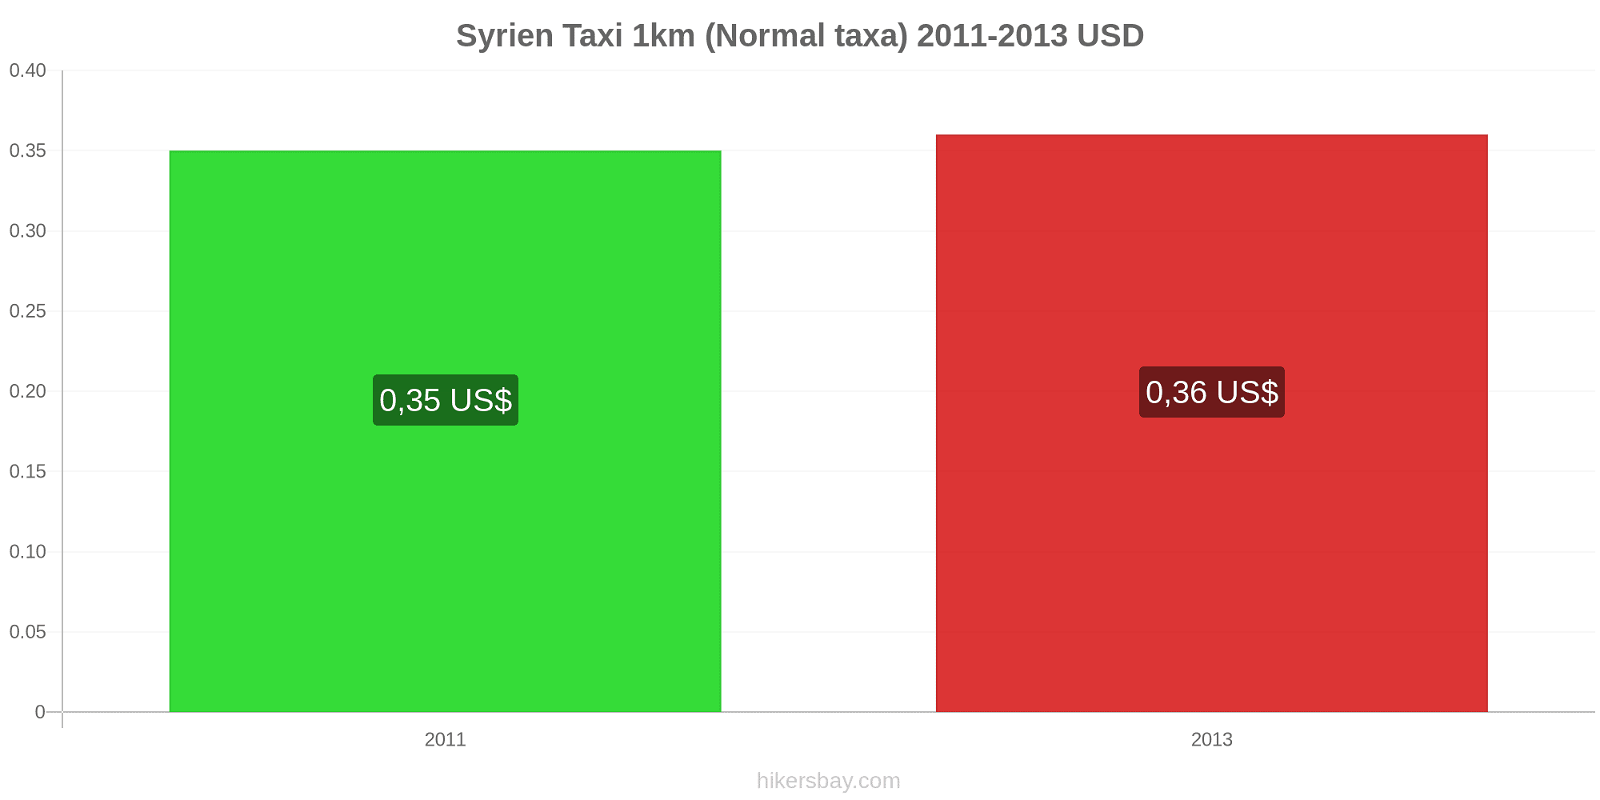 Syrien prisändringar Taxi 1km (Normal taxa) hikersbay.com